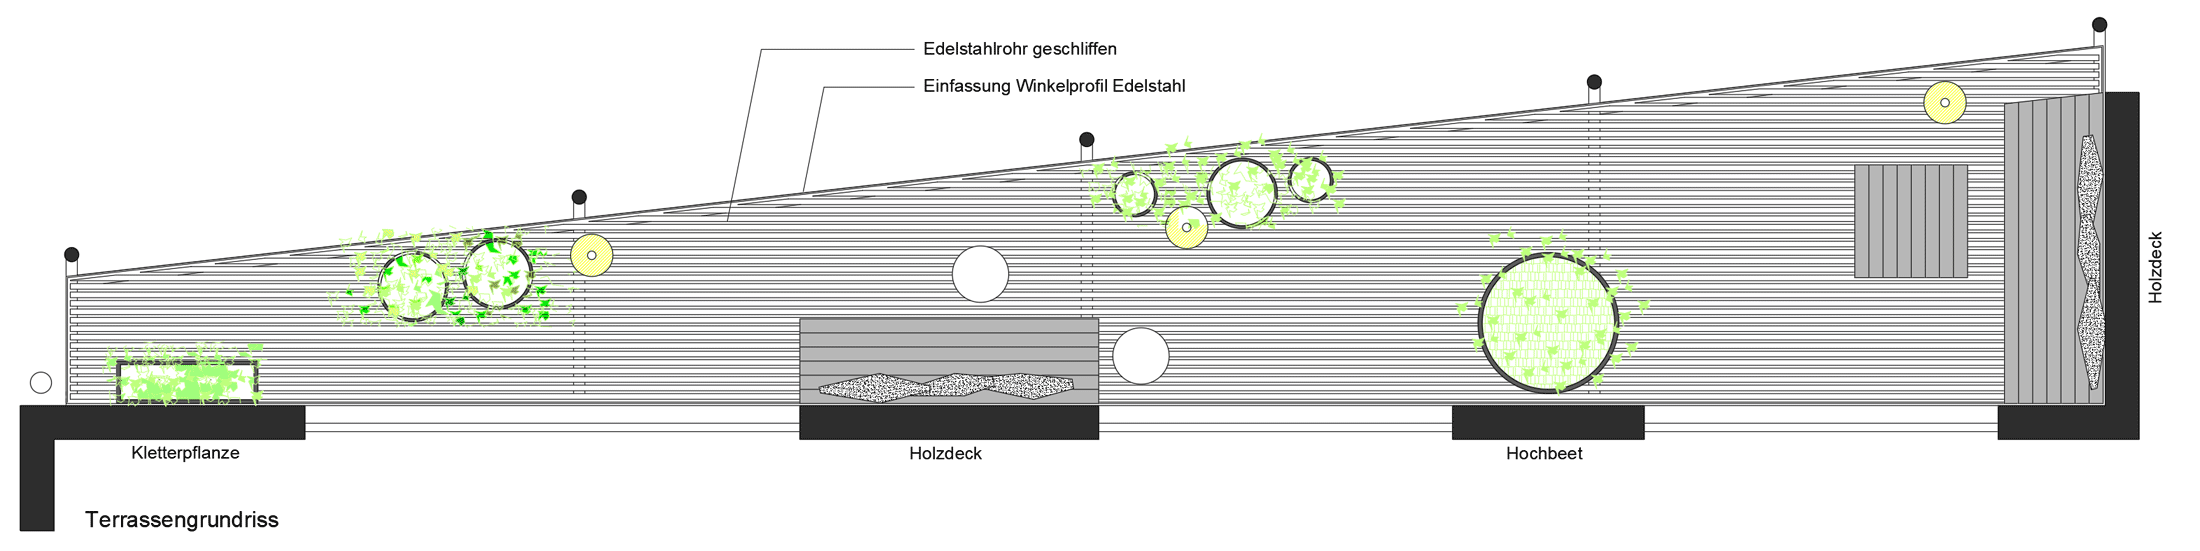 Grundriss-Zeichnung der Terrassensanierung